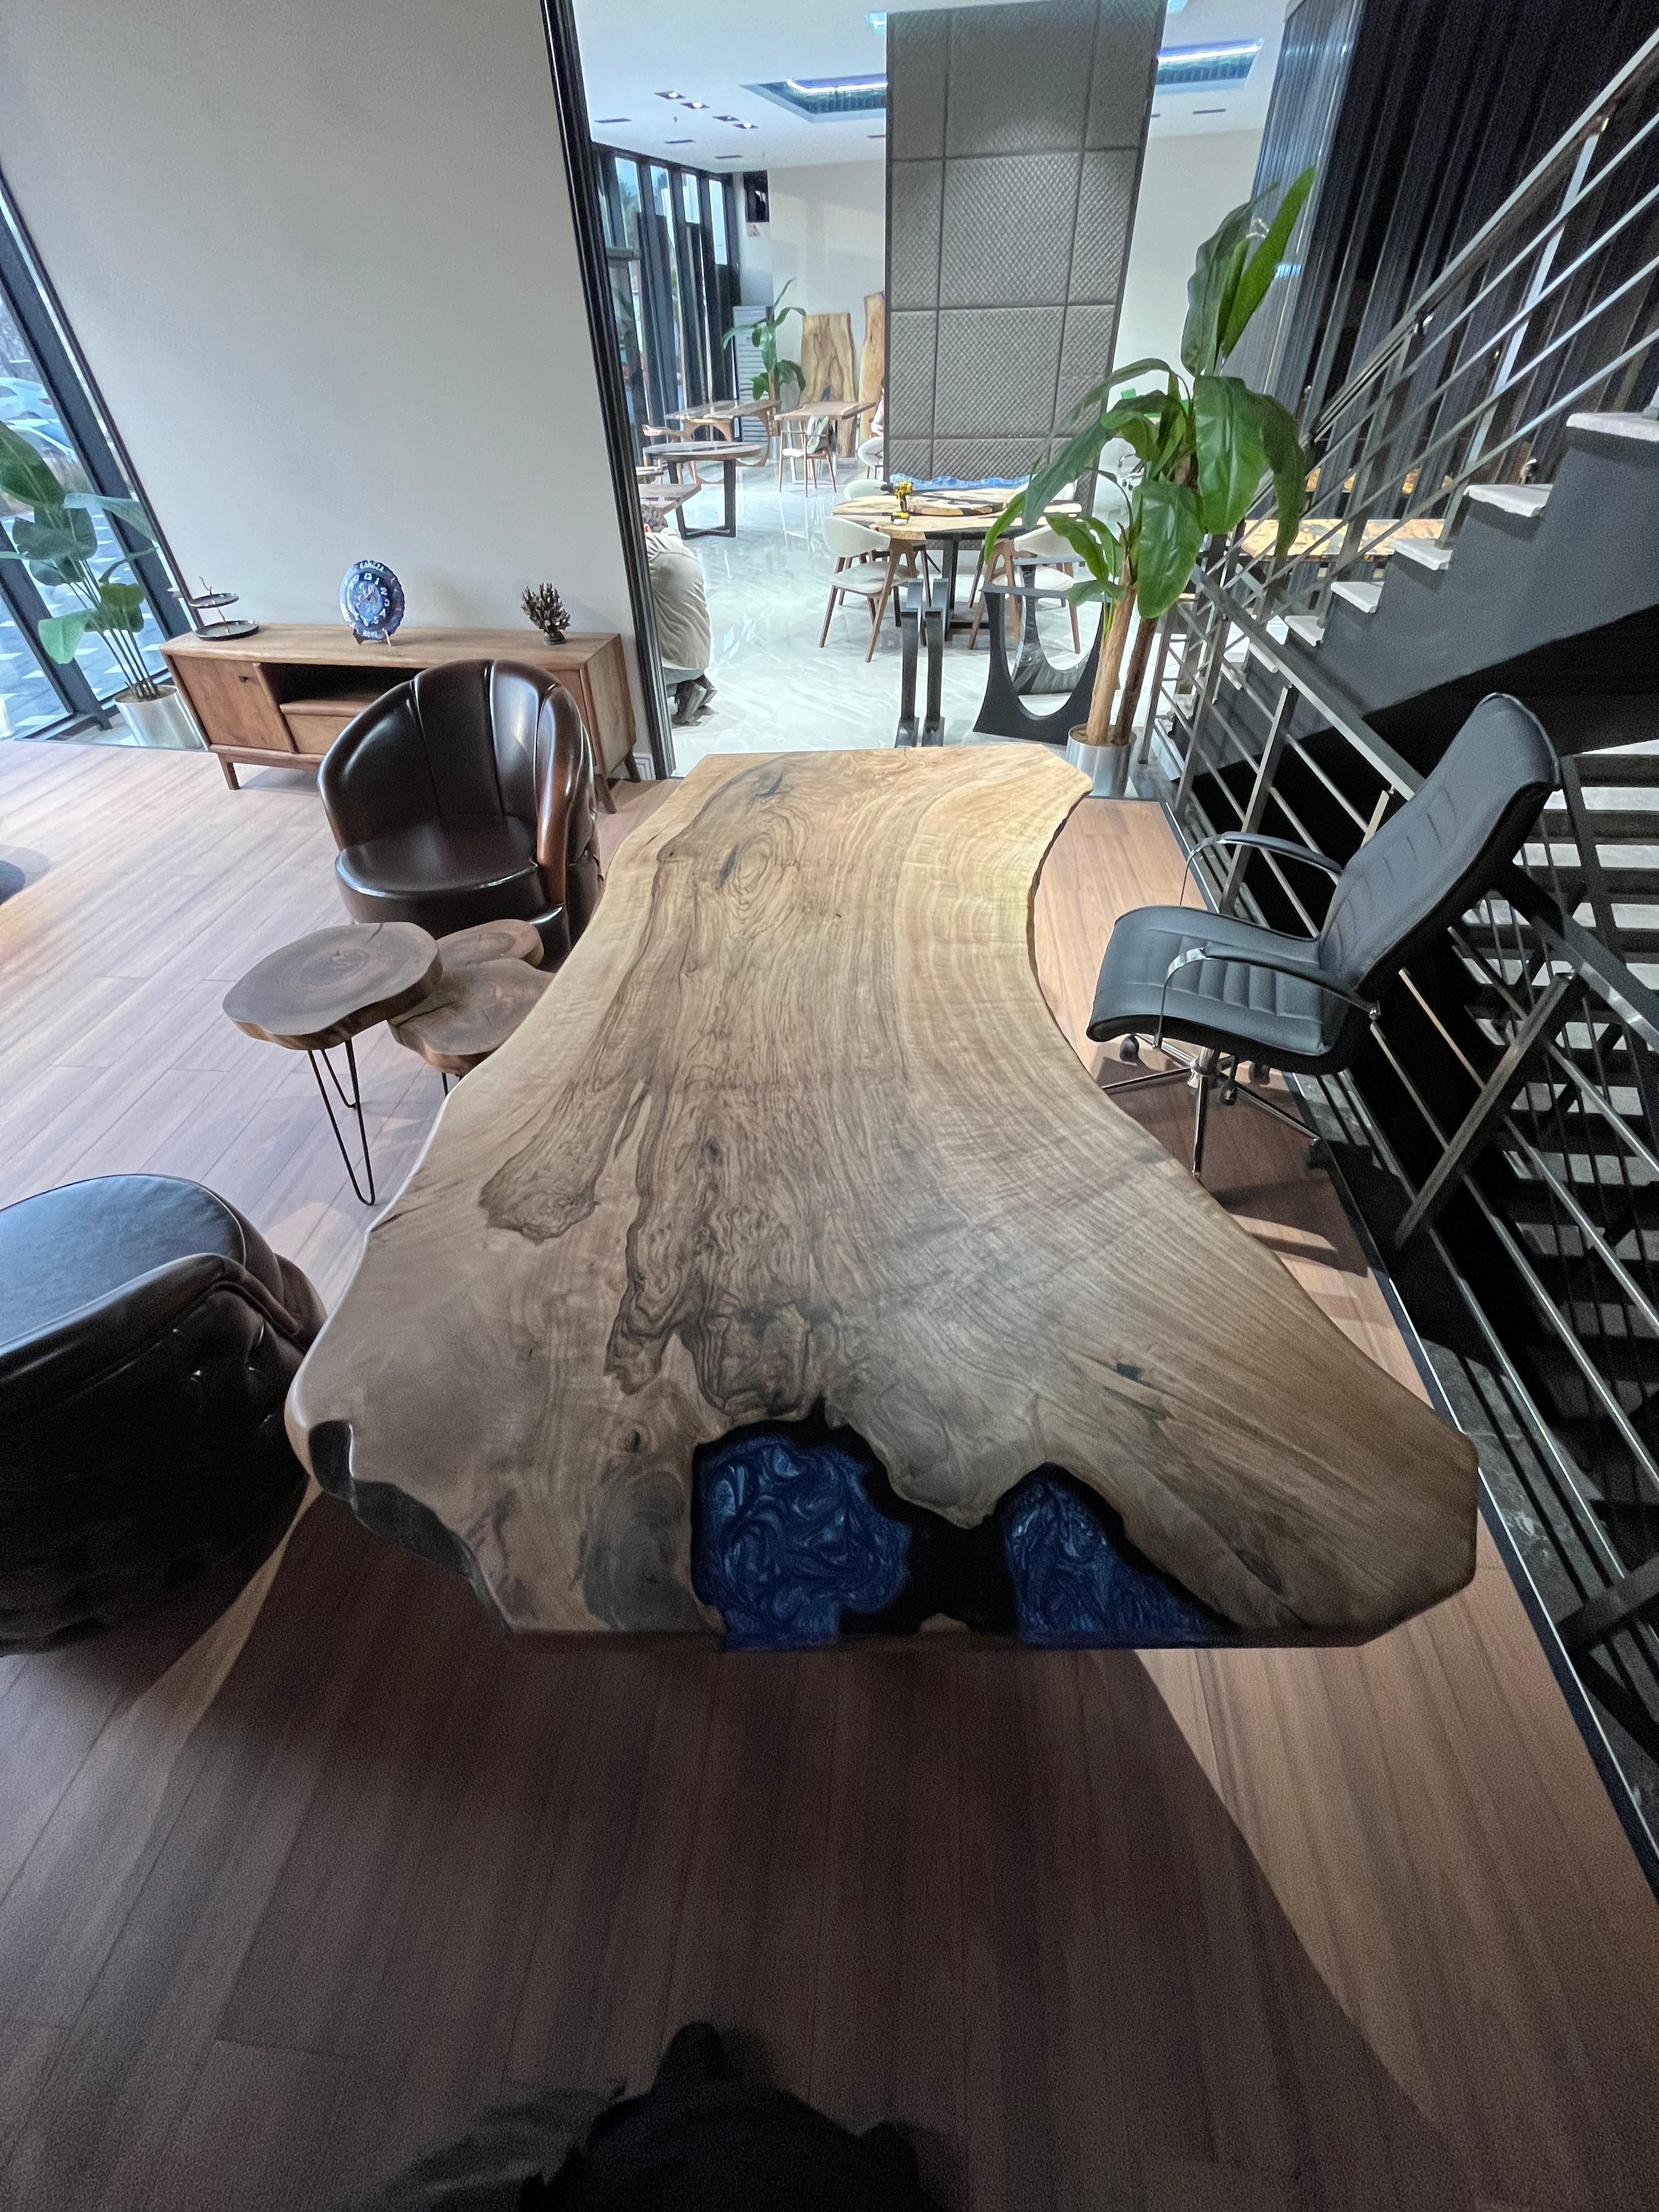 Konferenztisch aus massivem Walnussholz

Dieser Tisch ist aus 500 Jahre altem Walnussholz gefertigt. Die Maserung und die Struktur des Holzes beschreiben, wie ein natürliches Walnussholz aussieht.
Er kann als Esstisch oder als Konferenztisch